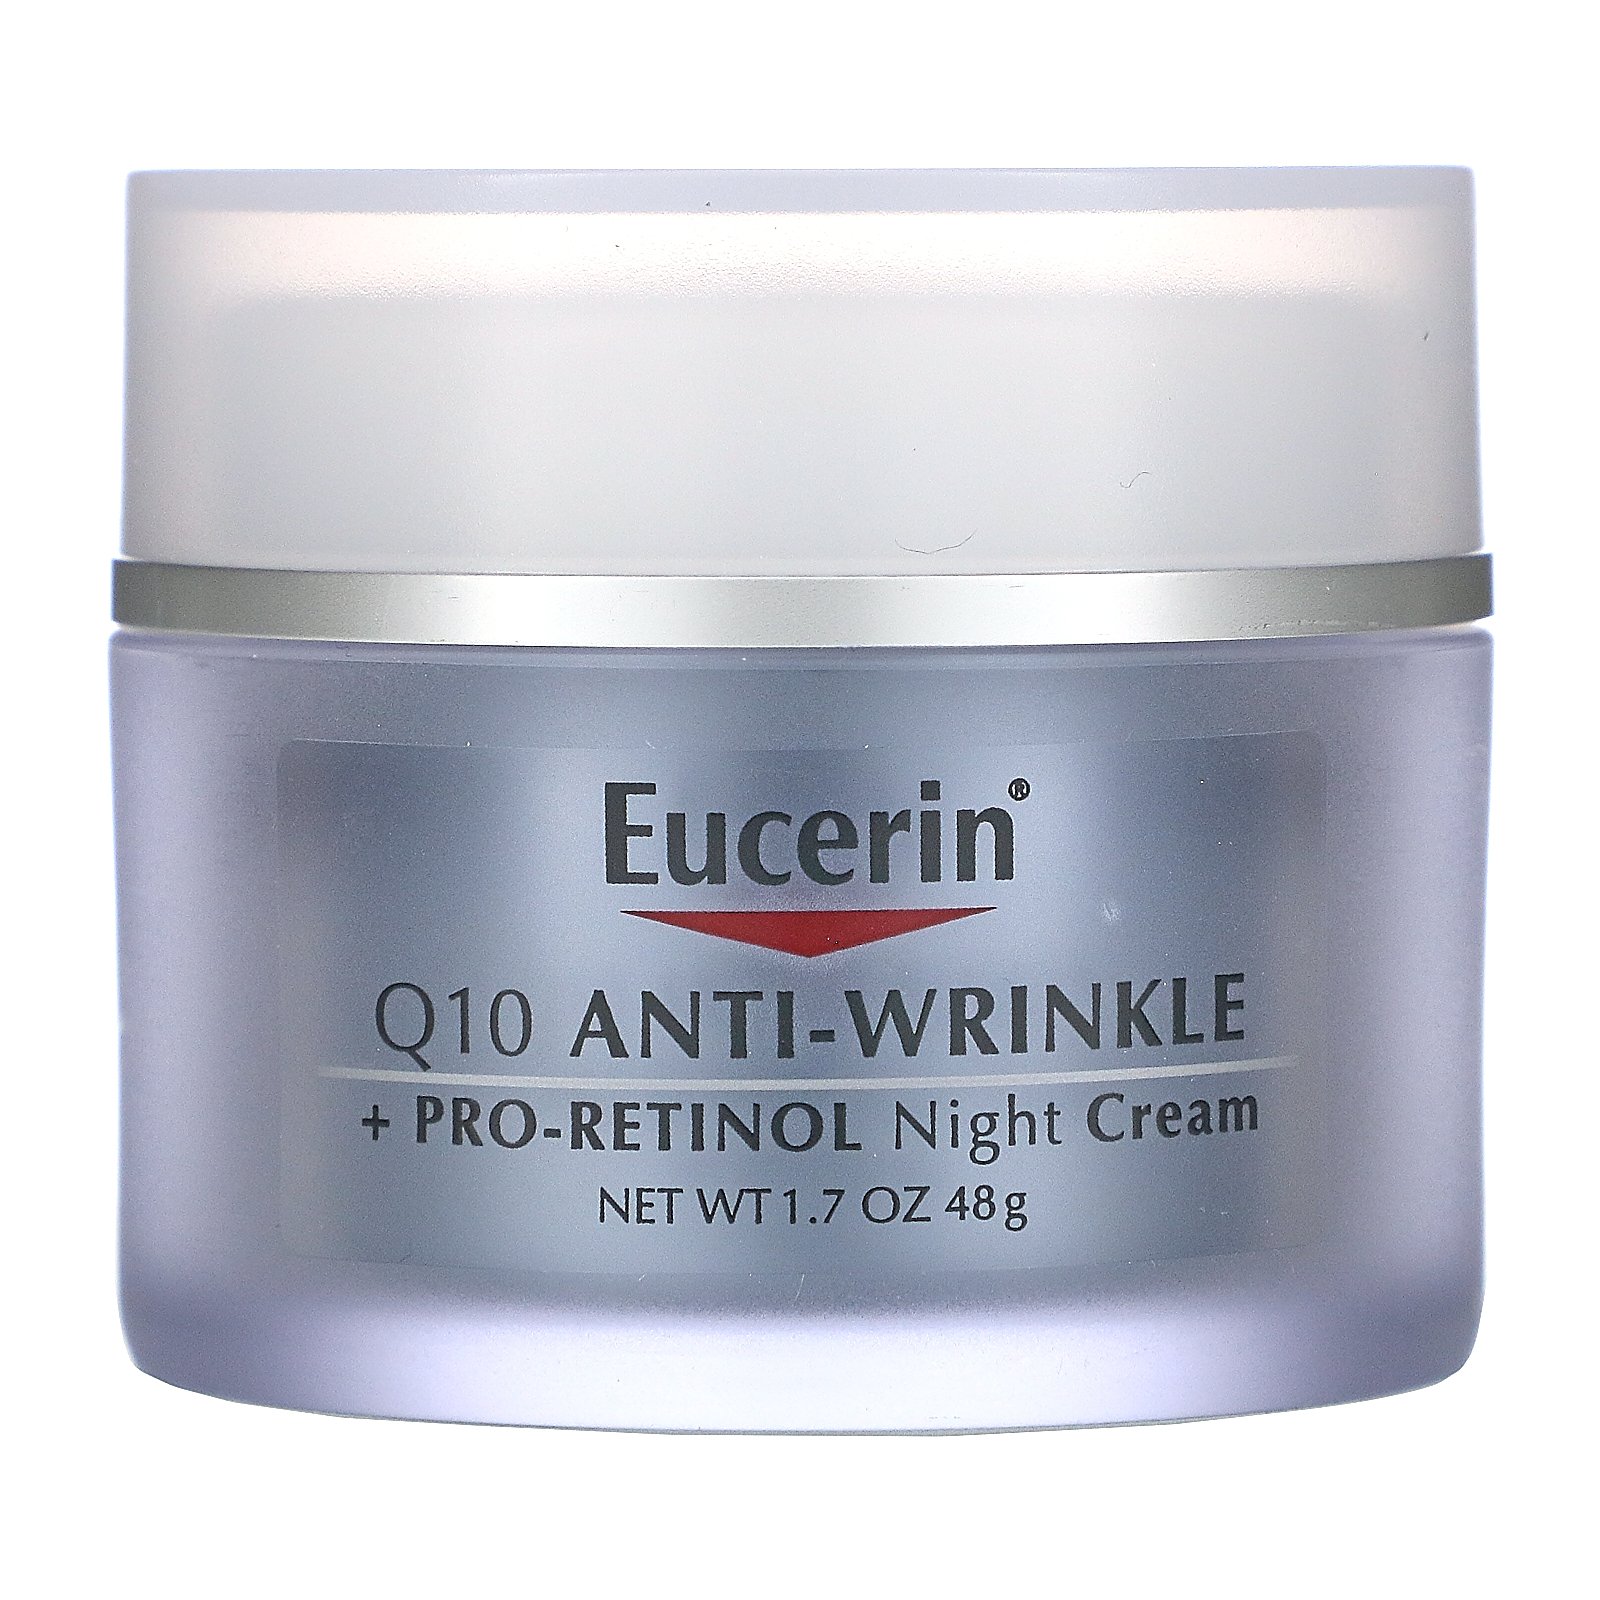 eucerin anti wrinkle night cream review